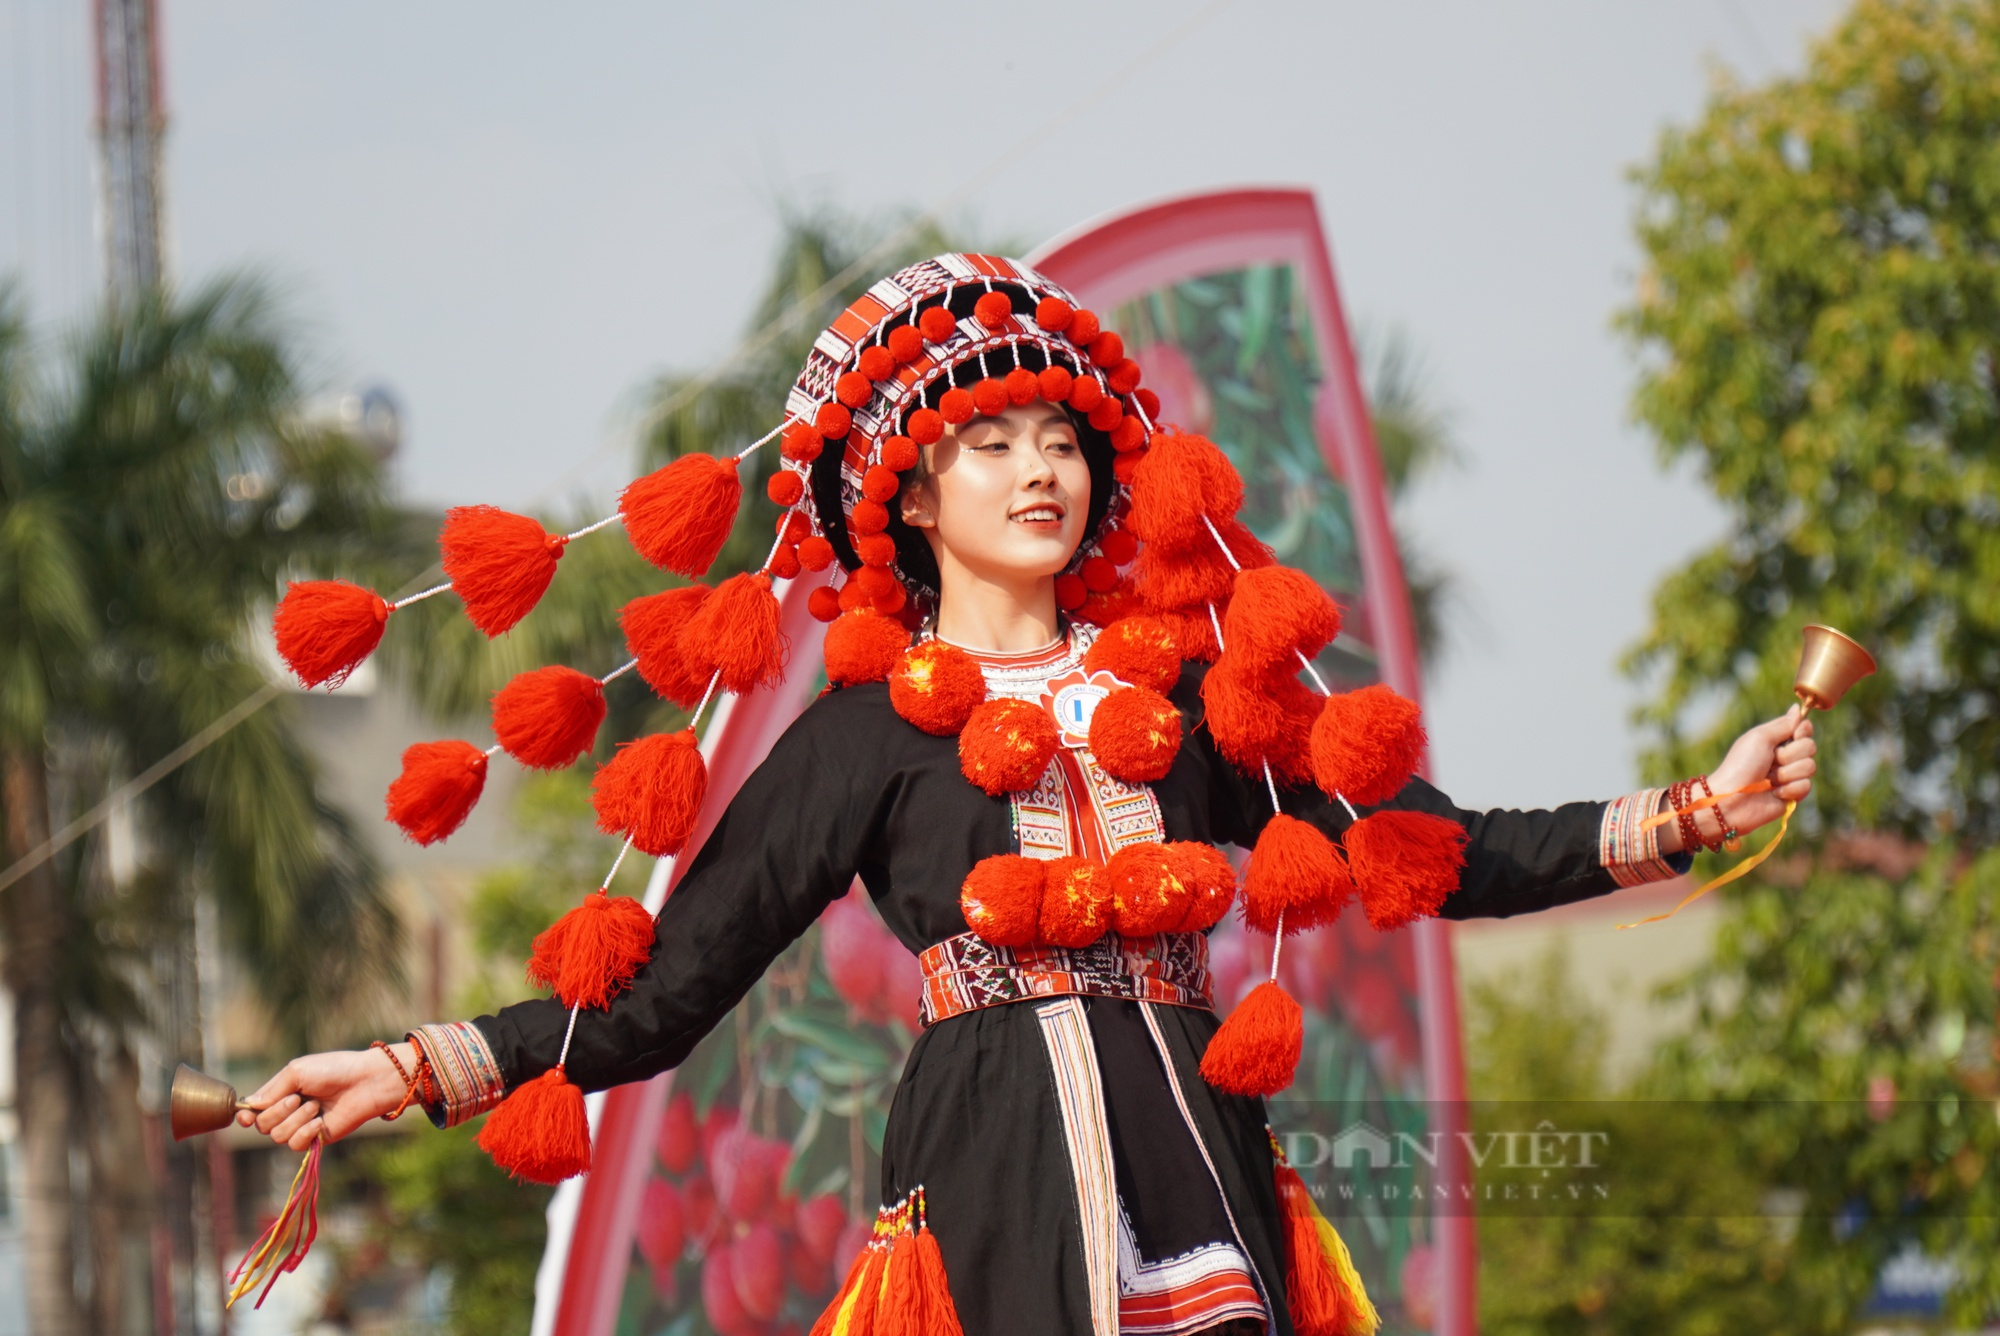 Mang trang phục tự dệt bằng vải bông, thí sinh người Tày gây bất ngờ tại cuộc thi trang phục dân tộc huyện Lục Ngạn - Ảnh 5.